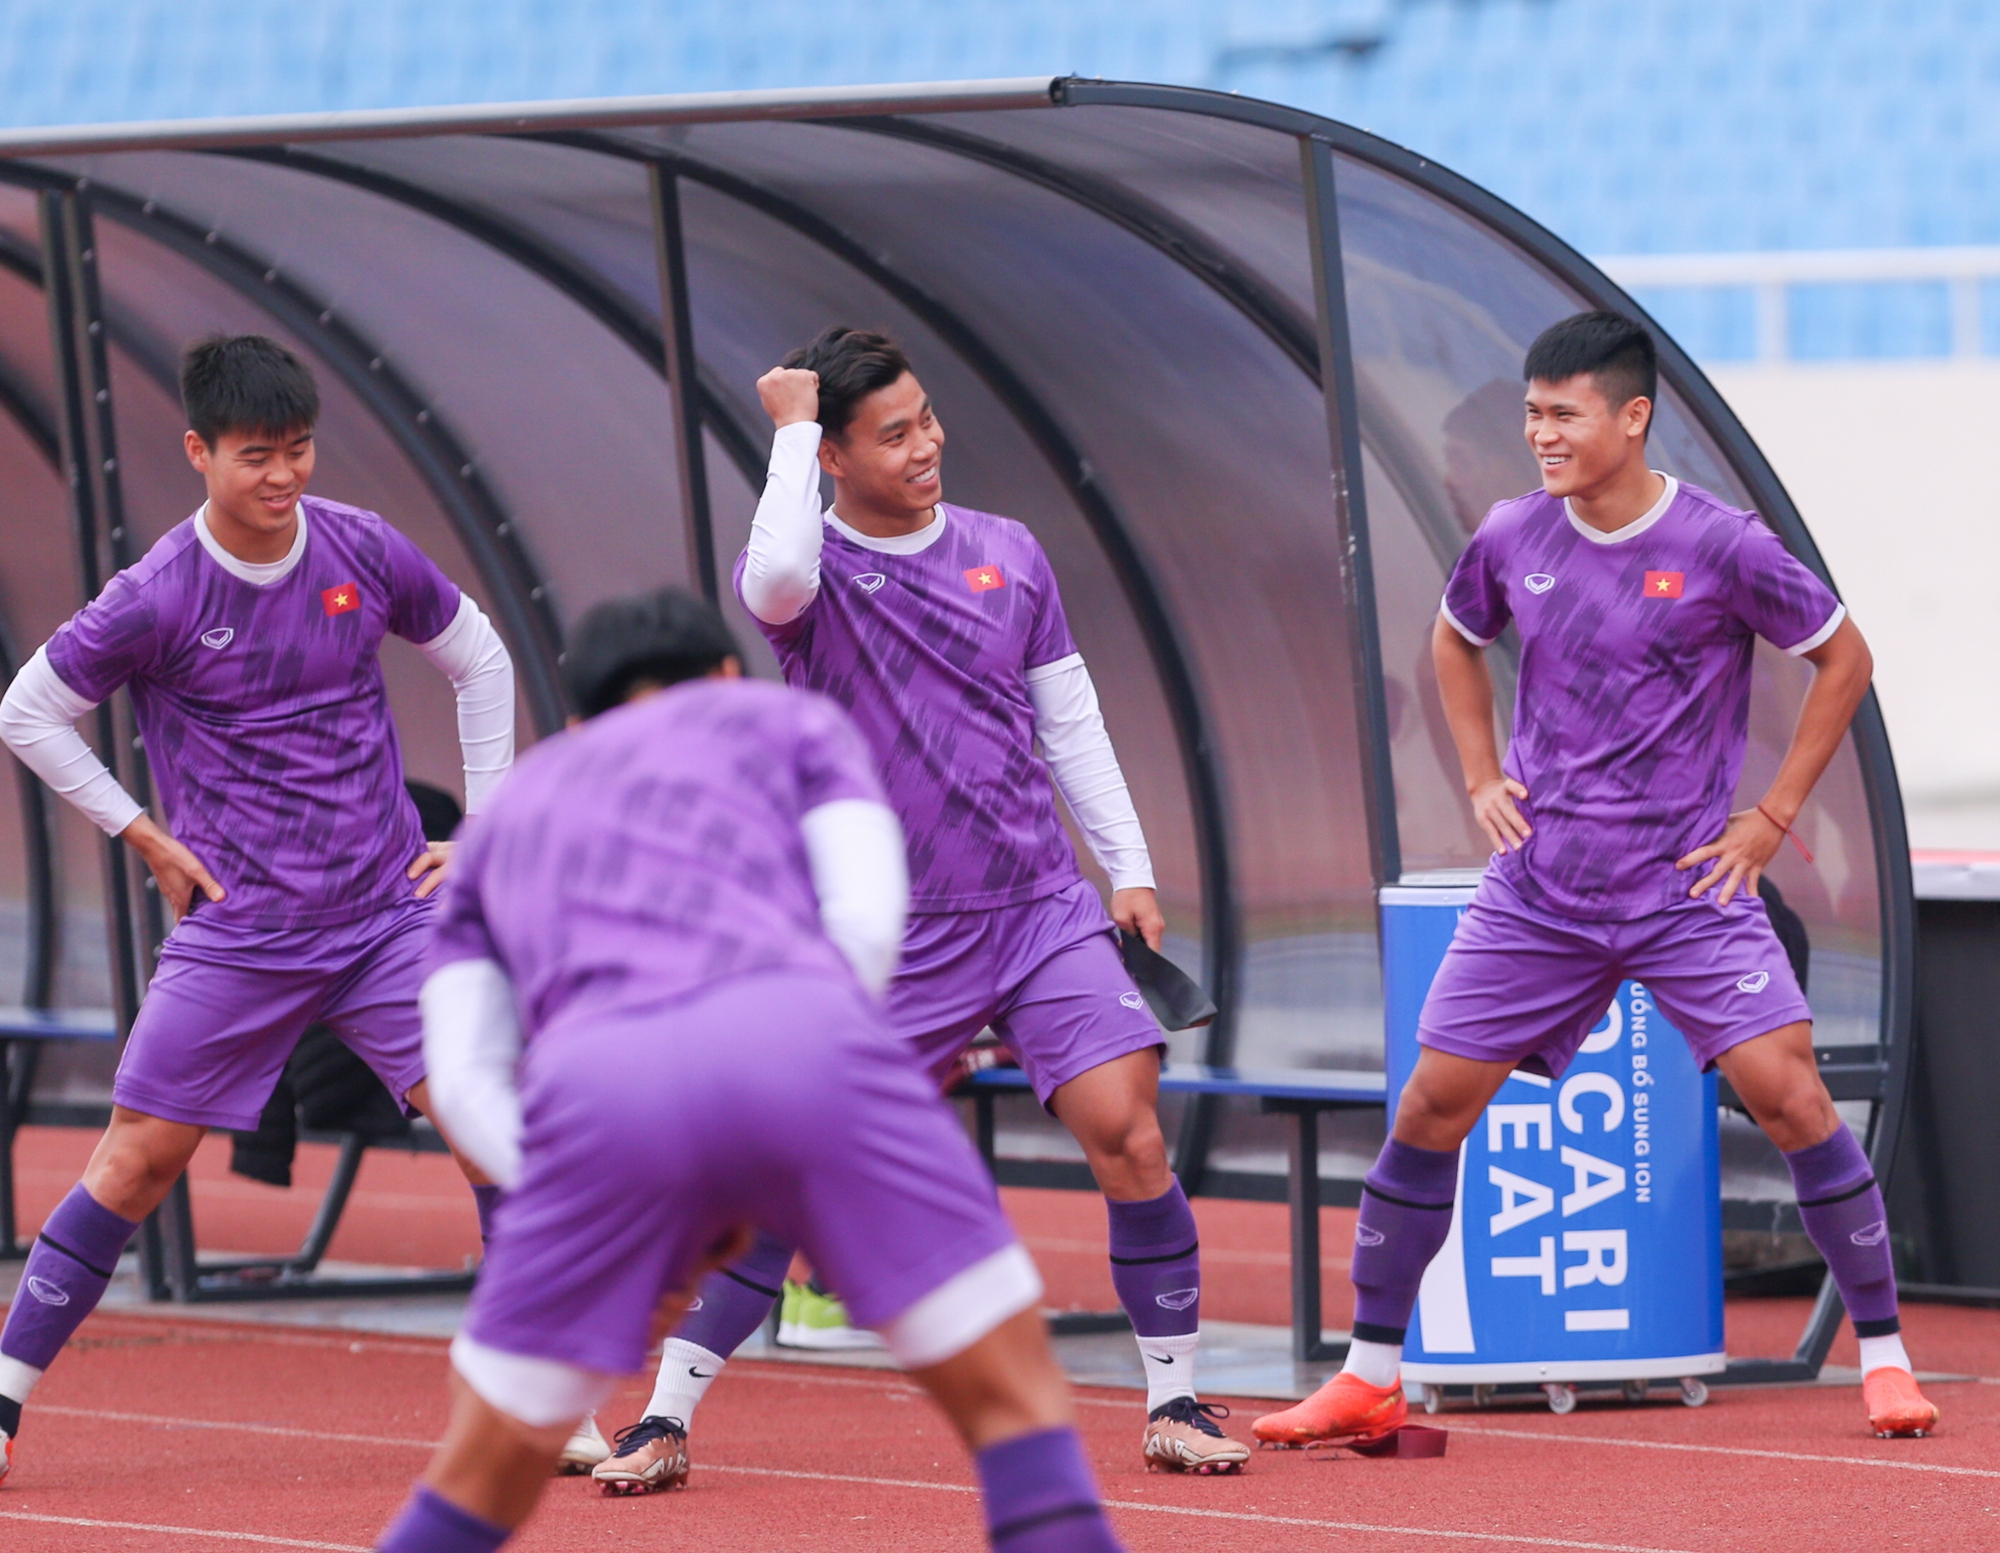 HLV Park Hang-seo kiểm tra sân, đội tuyển Việt Nam đến sớm phải khởi động ngoài đường chạy - Ảnh 4.